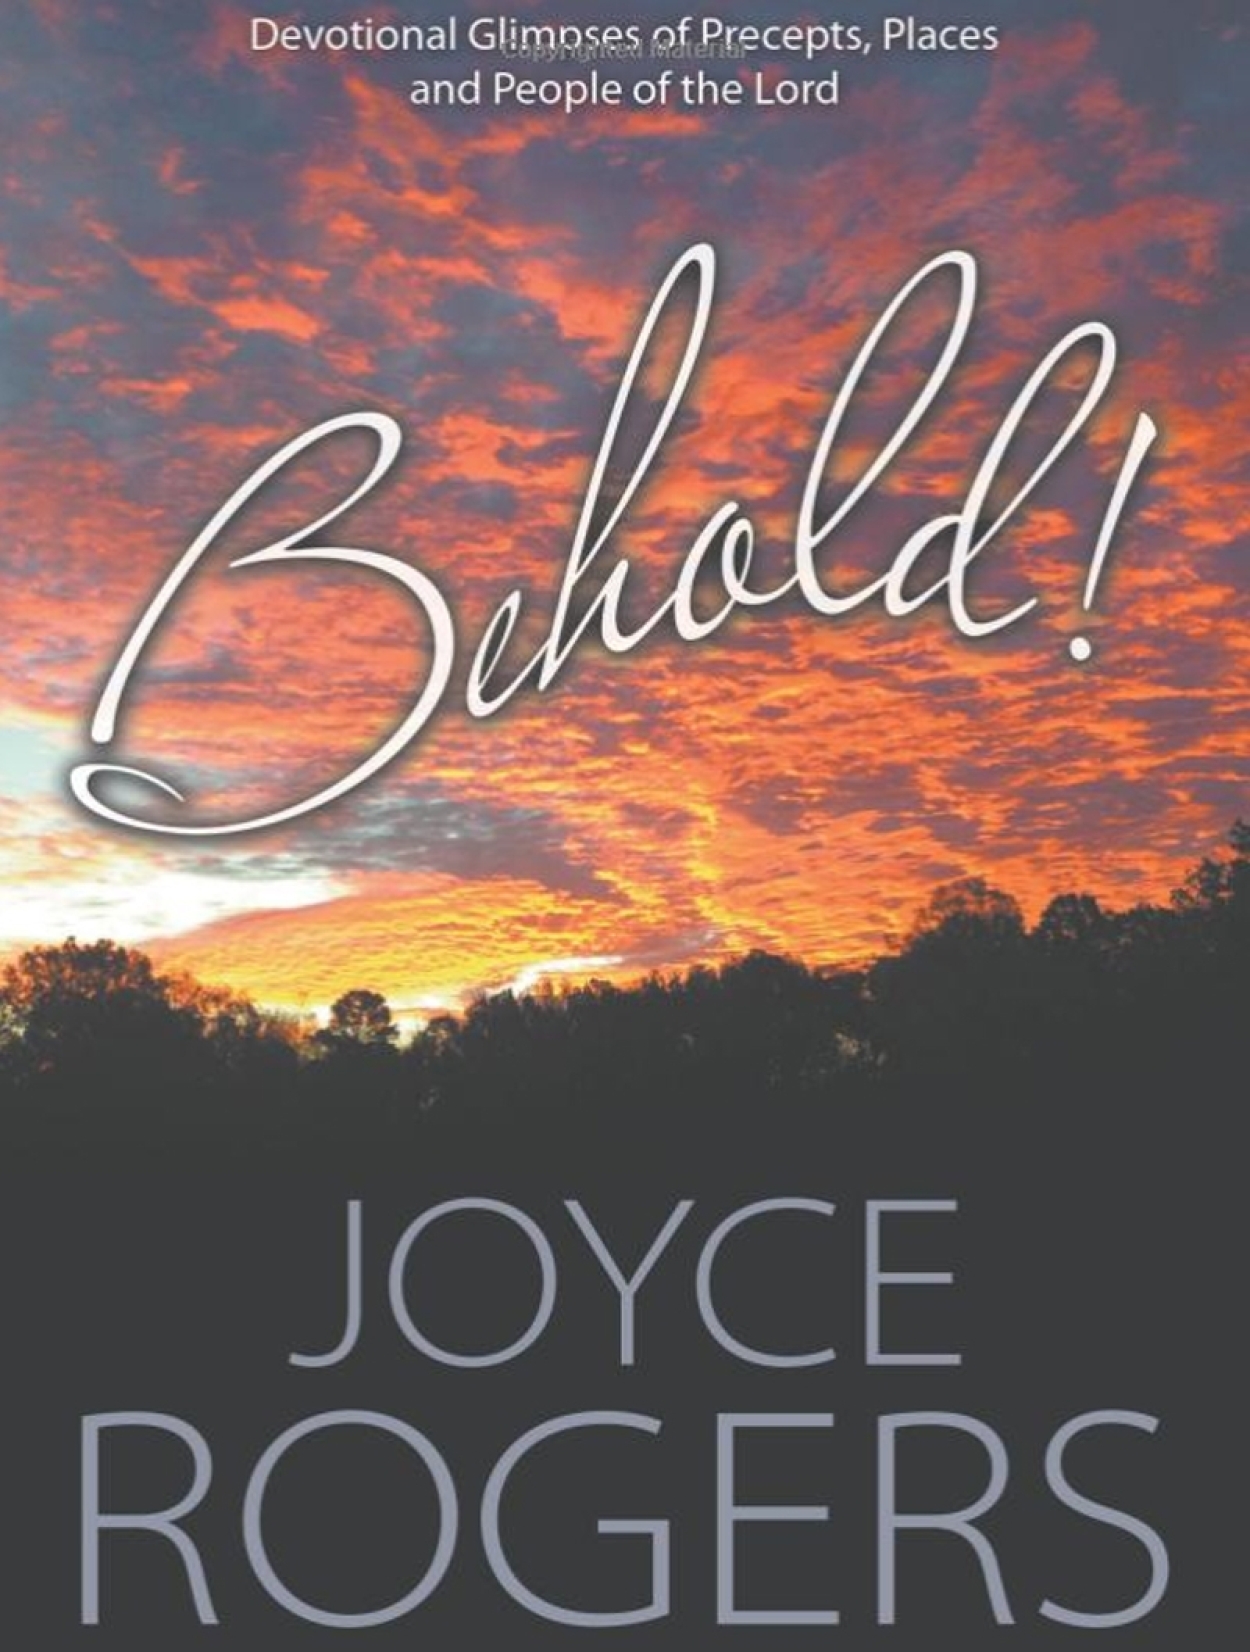 Behold book joyce rogers jb08